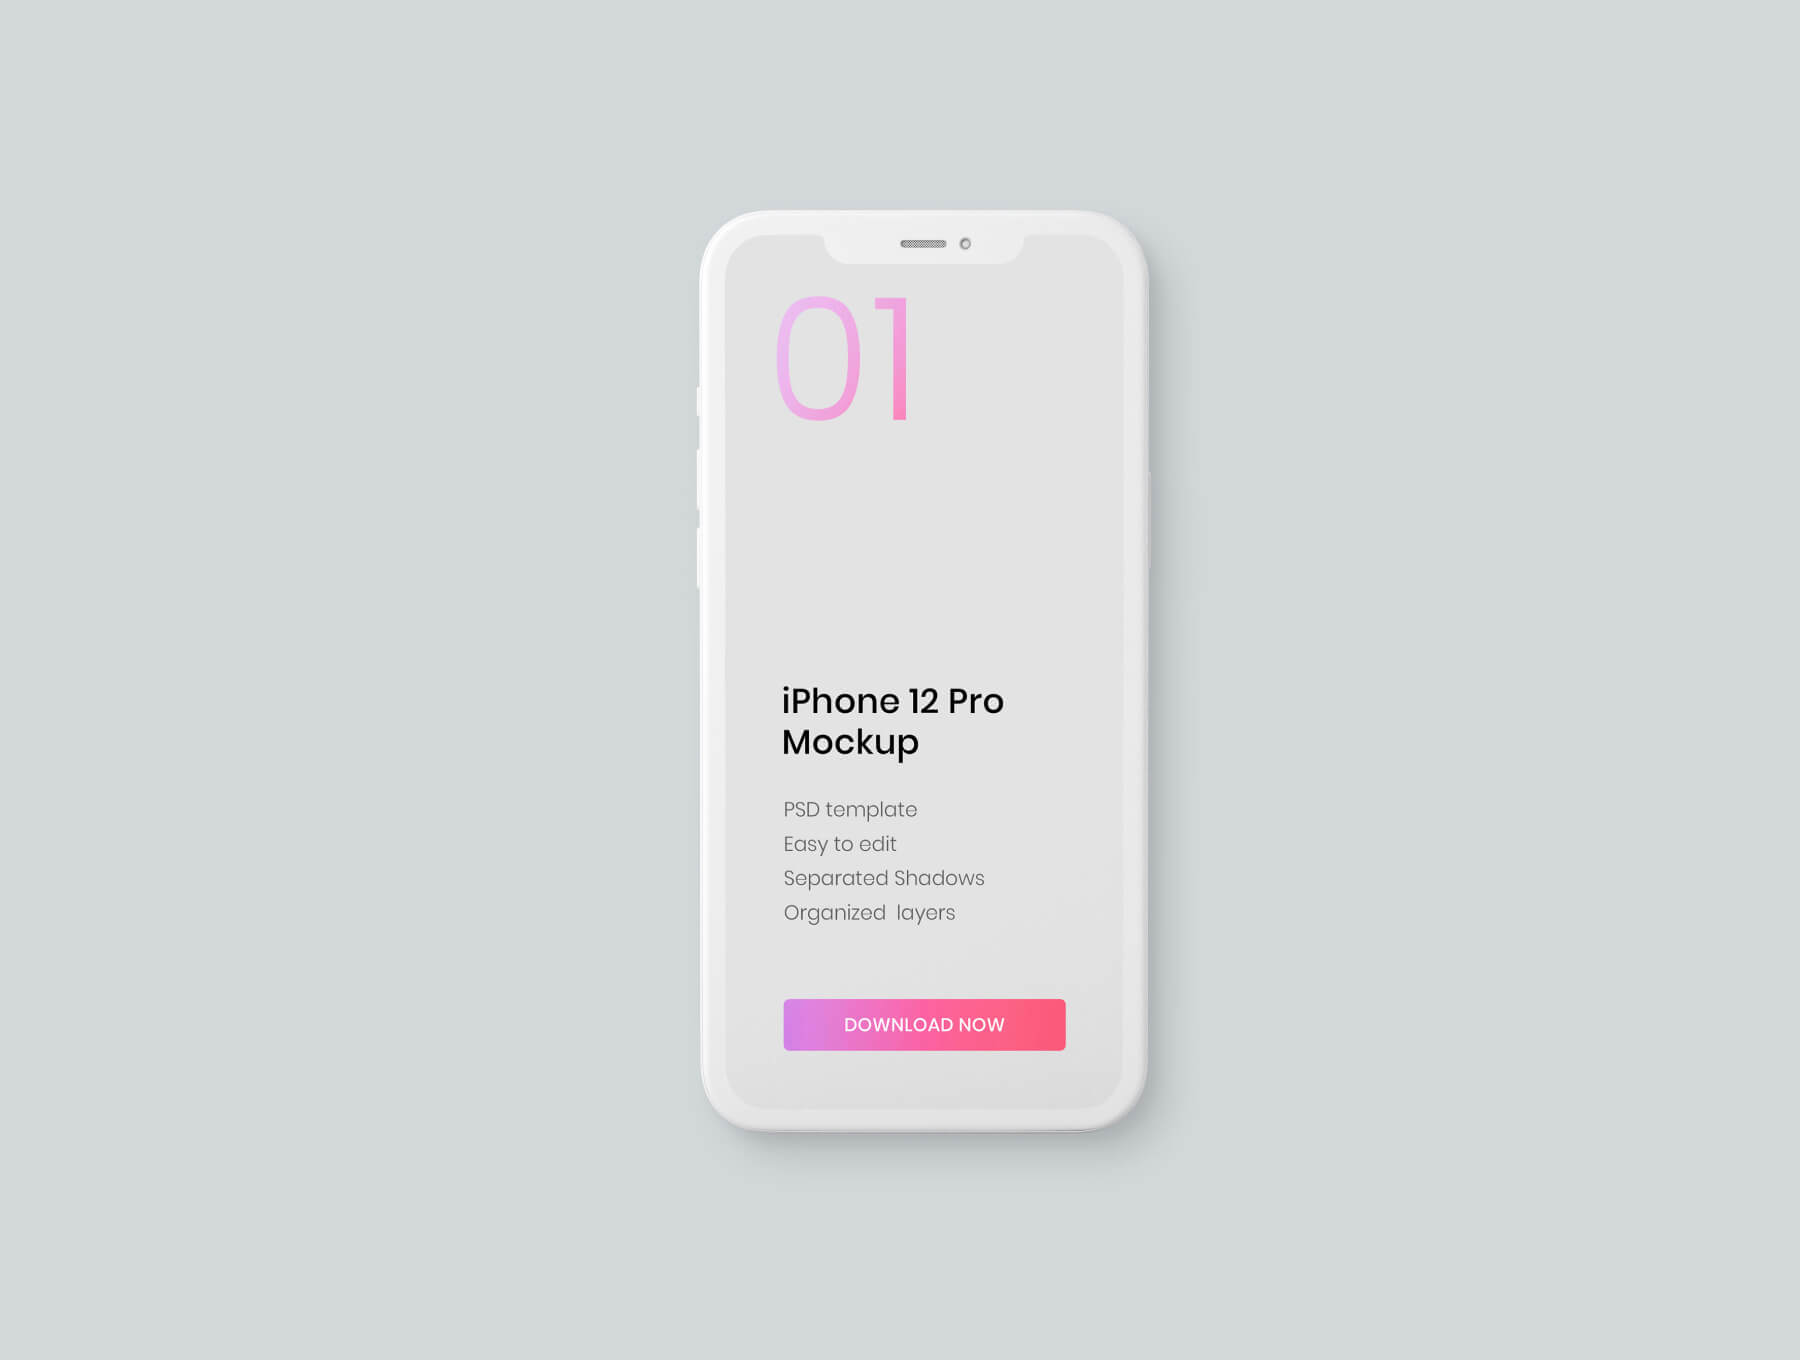 简约概念化iphone 12 Pro模型样机素材 Ui设计作品包装模版下载 设计口袋